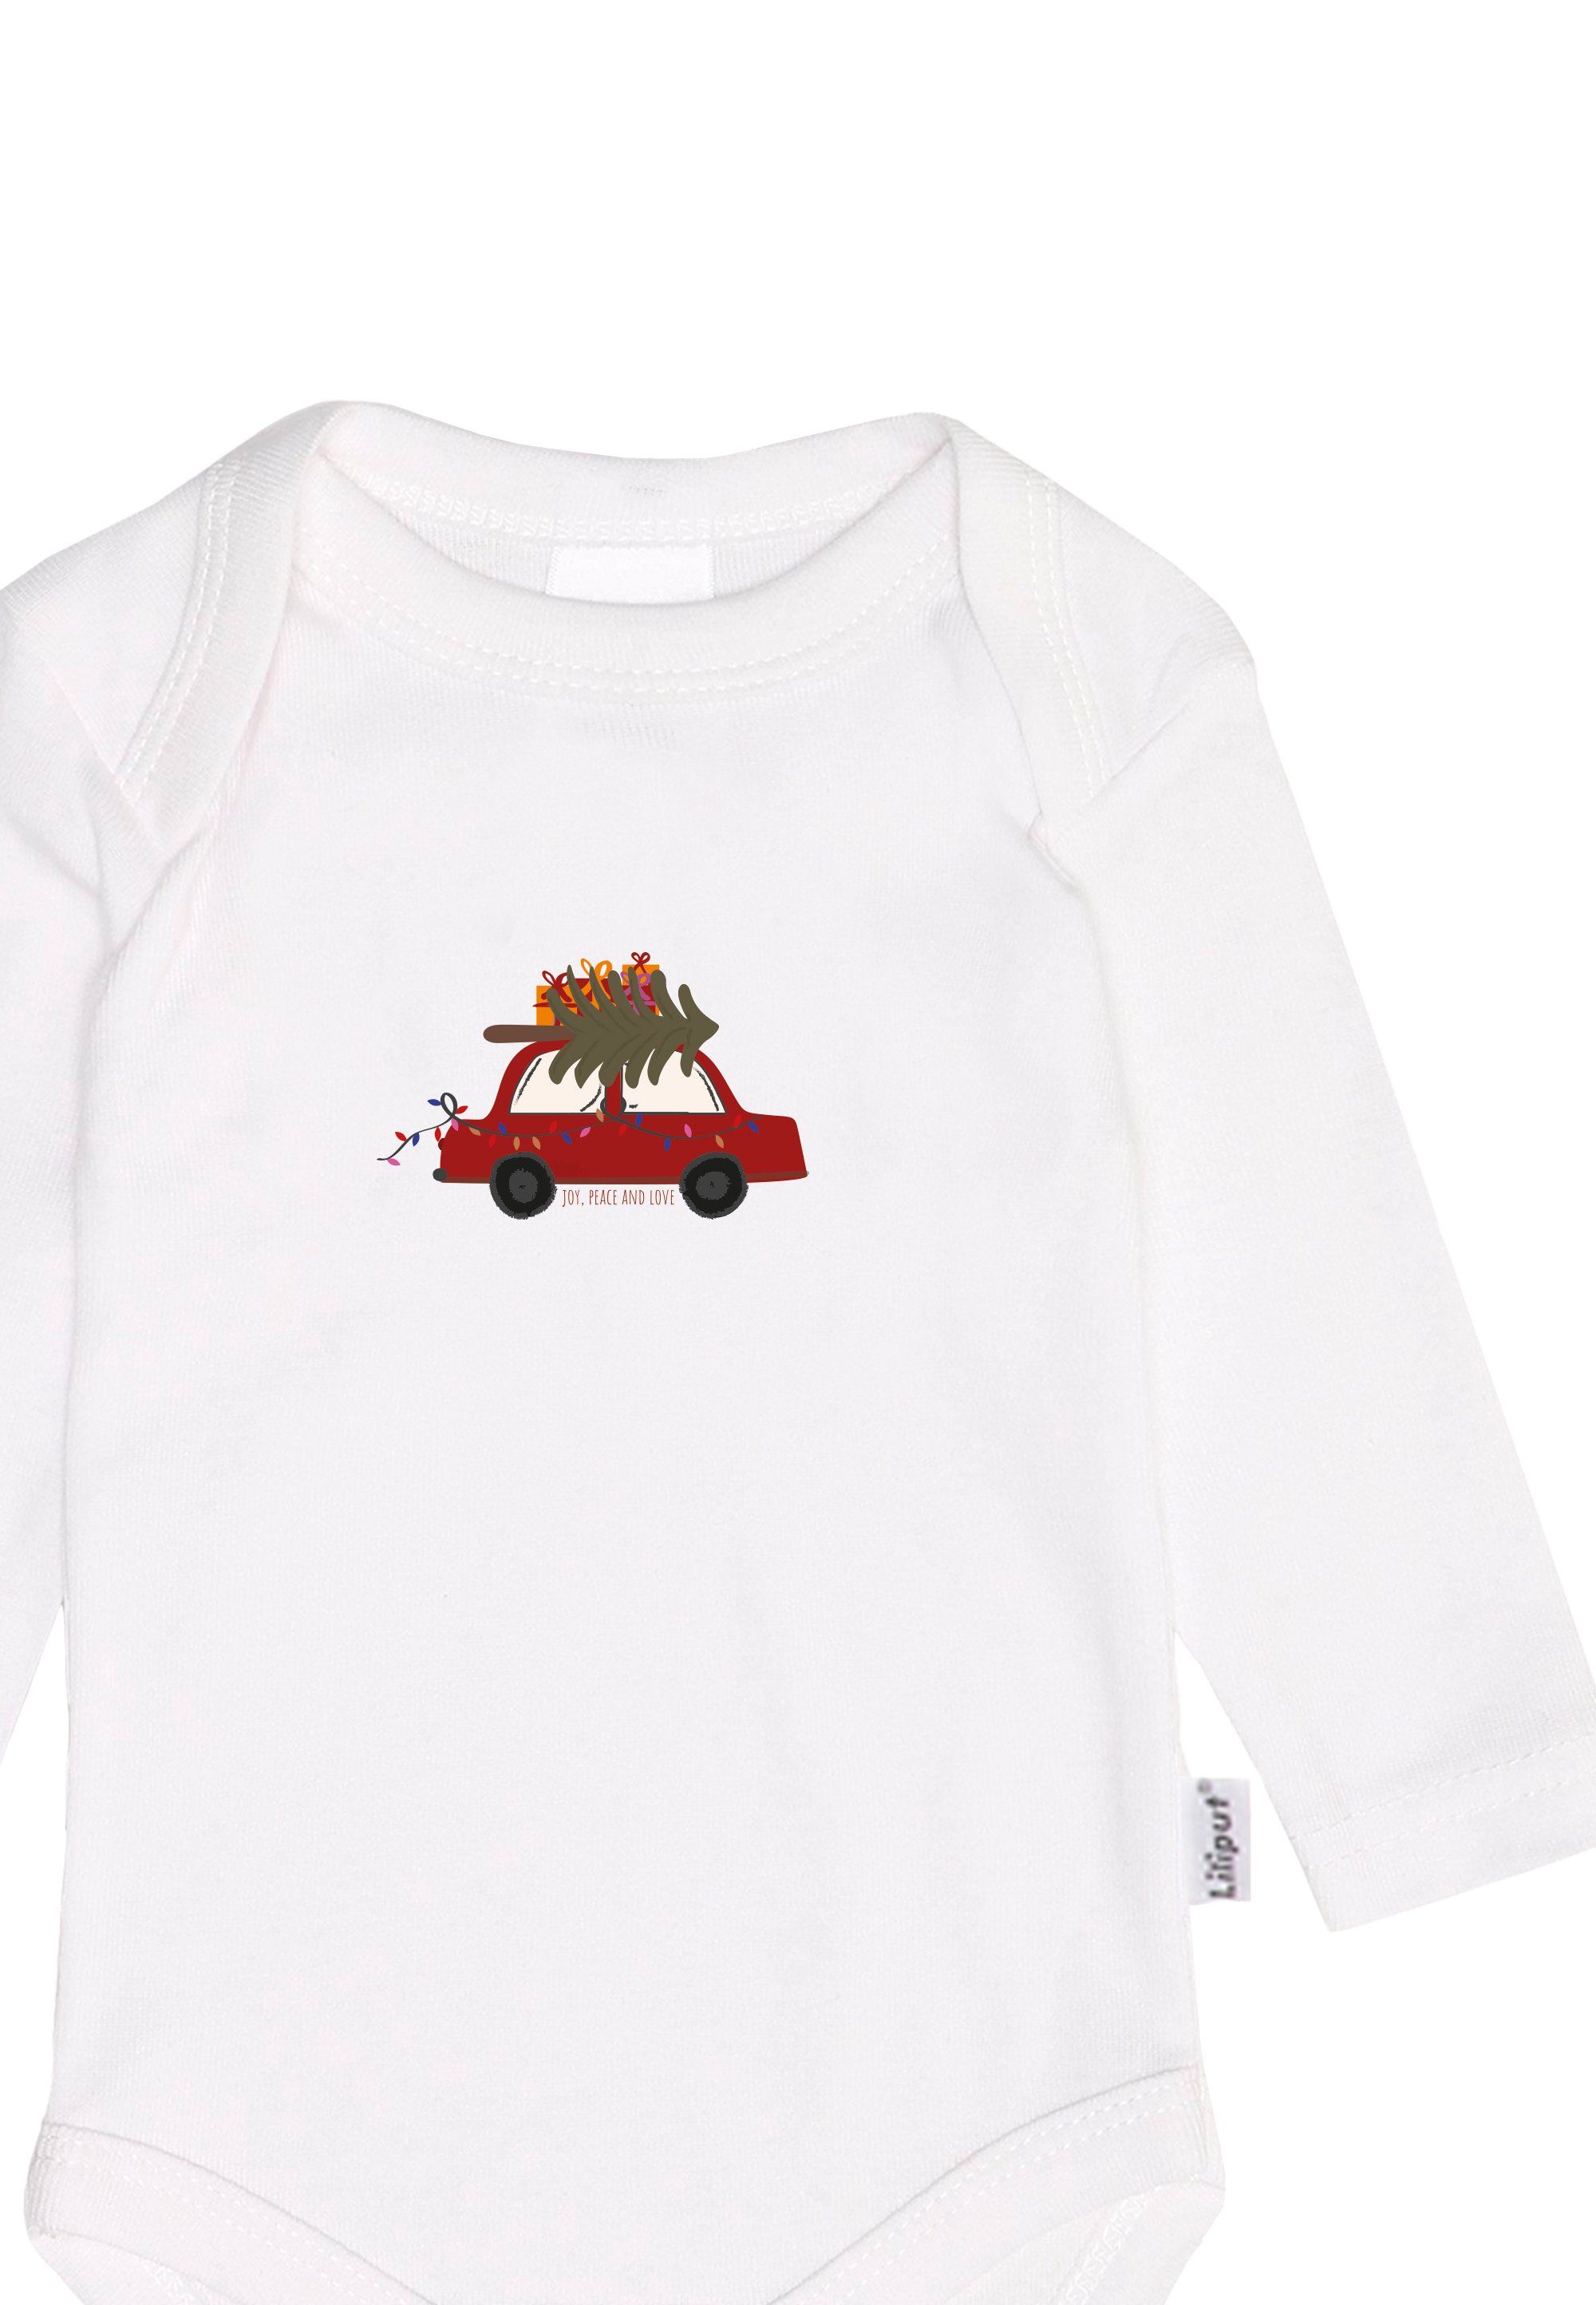 Mütze Auto Liliput aus Body, Erstausstattungspaket Söckchen bestehend mit und Tannenbaum